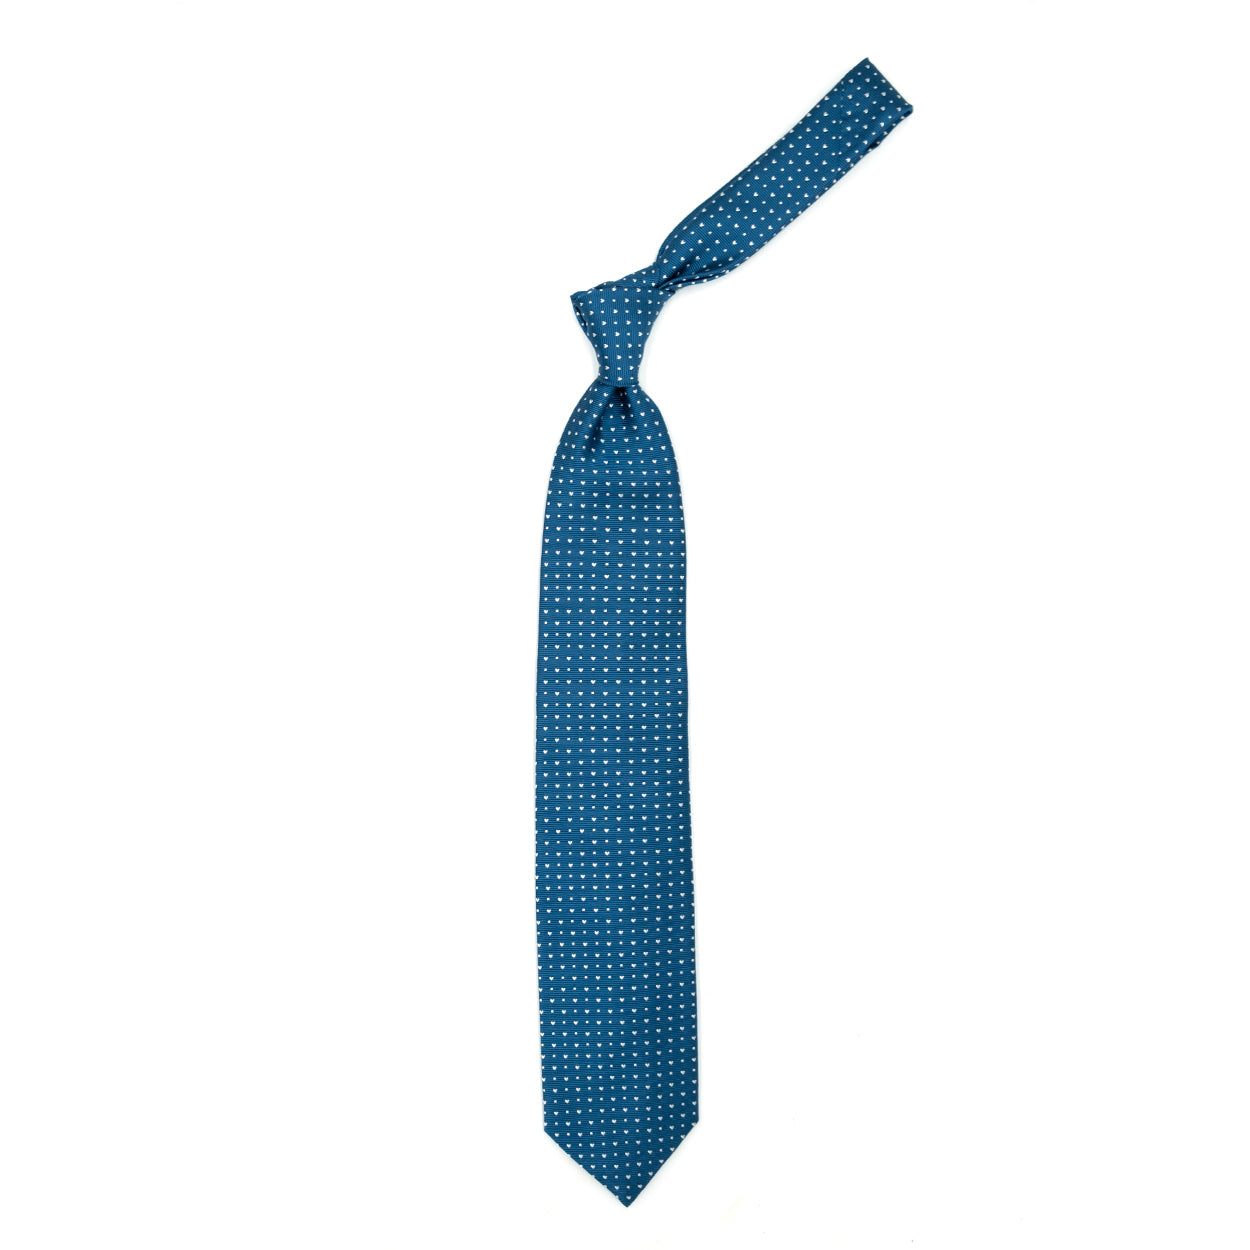 Cravatta azzurra con cuoricini e quadratini bianchi